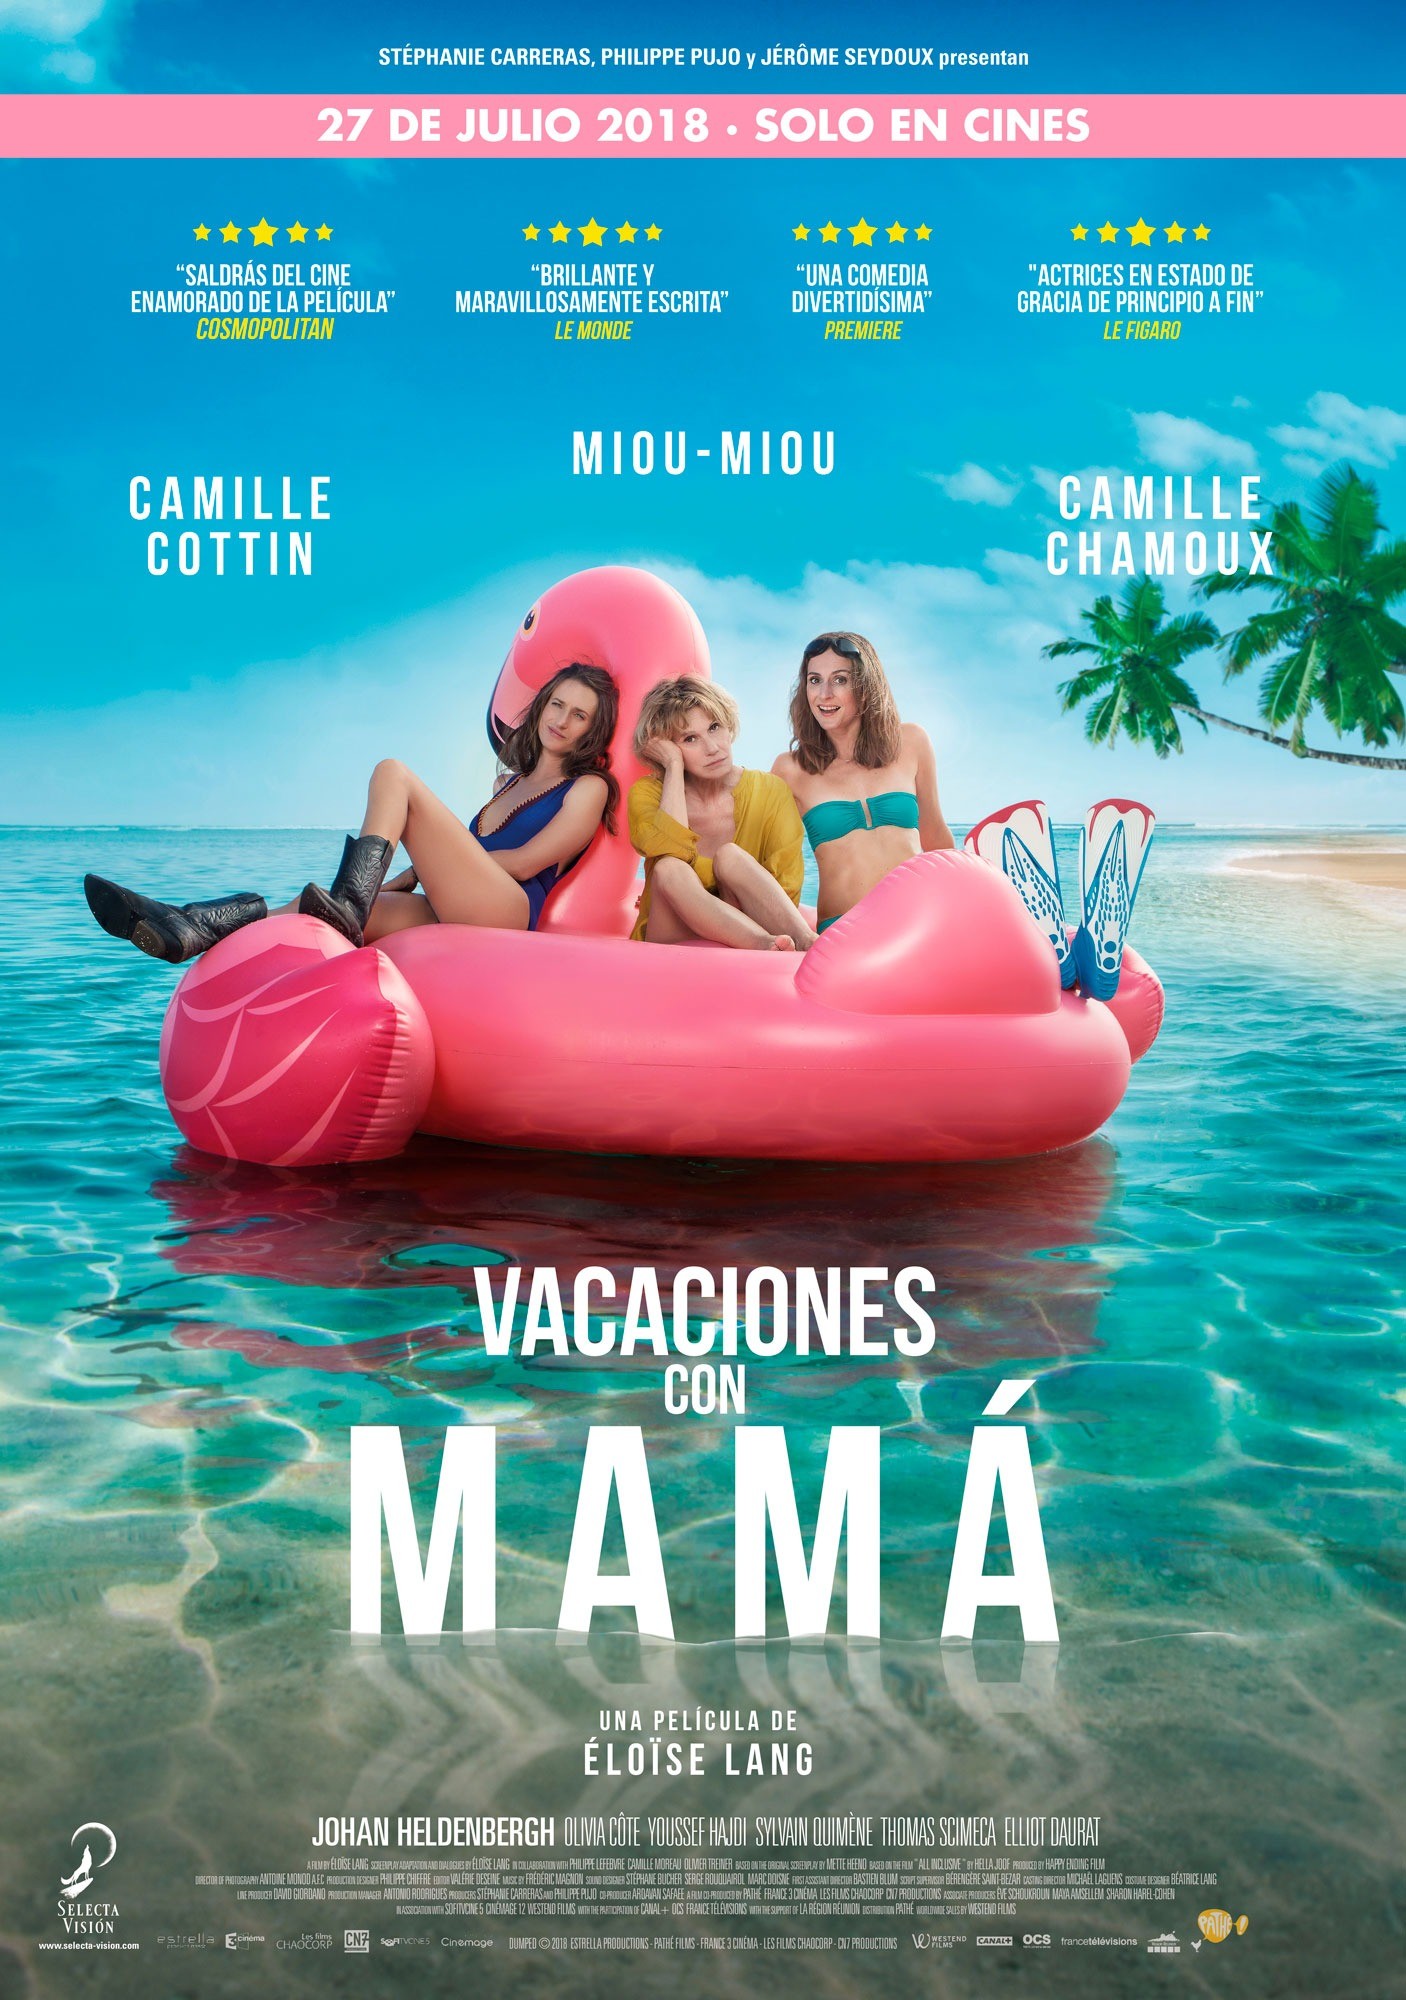 Vacaciones-con-mama-70x100-v2-3